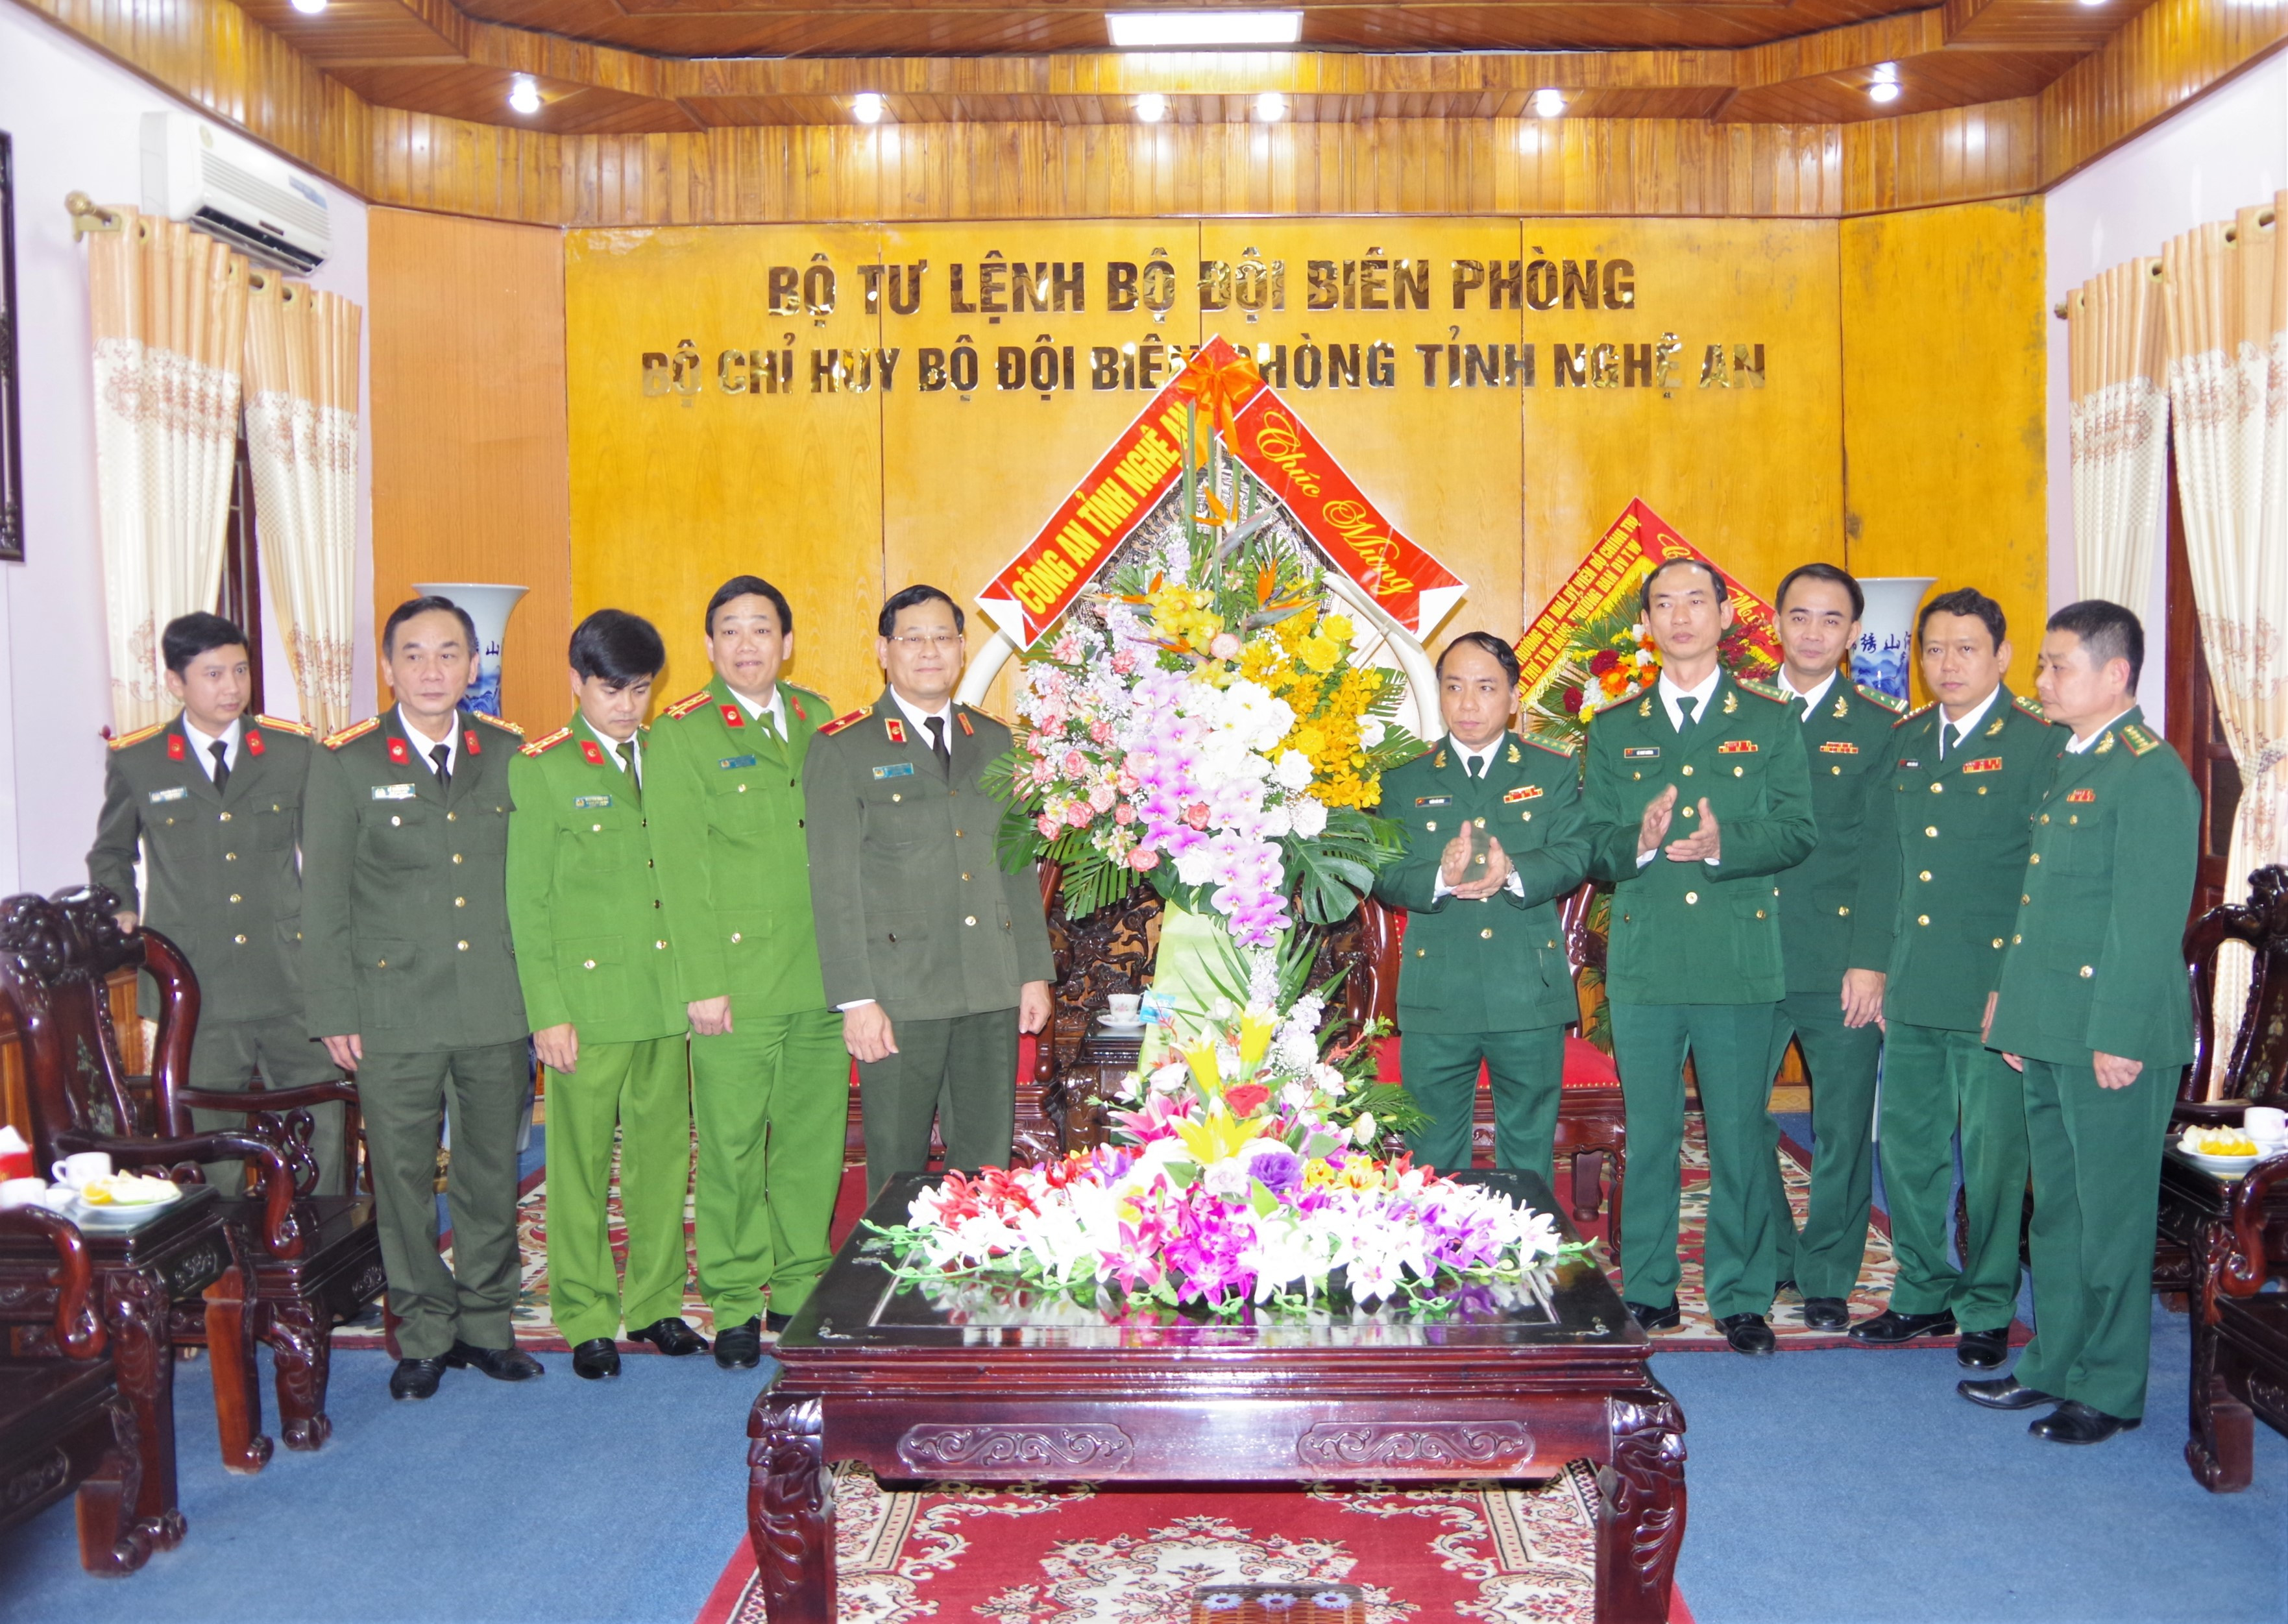 Ban giám đốc Công an tỉnh Nghệ An chúc mừng CBCS BĐBP tỉnh. Ảnh: Lê Thạch